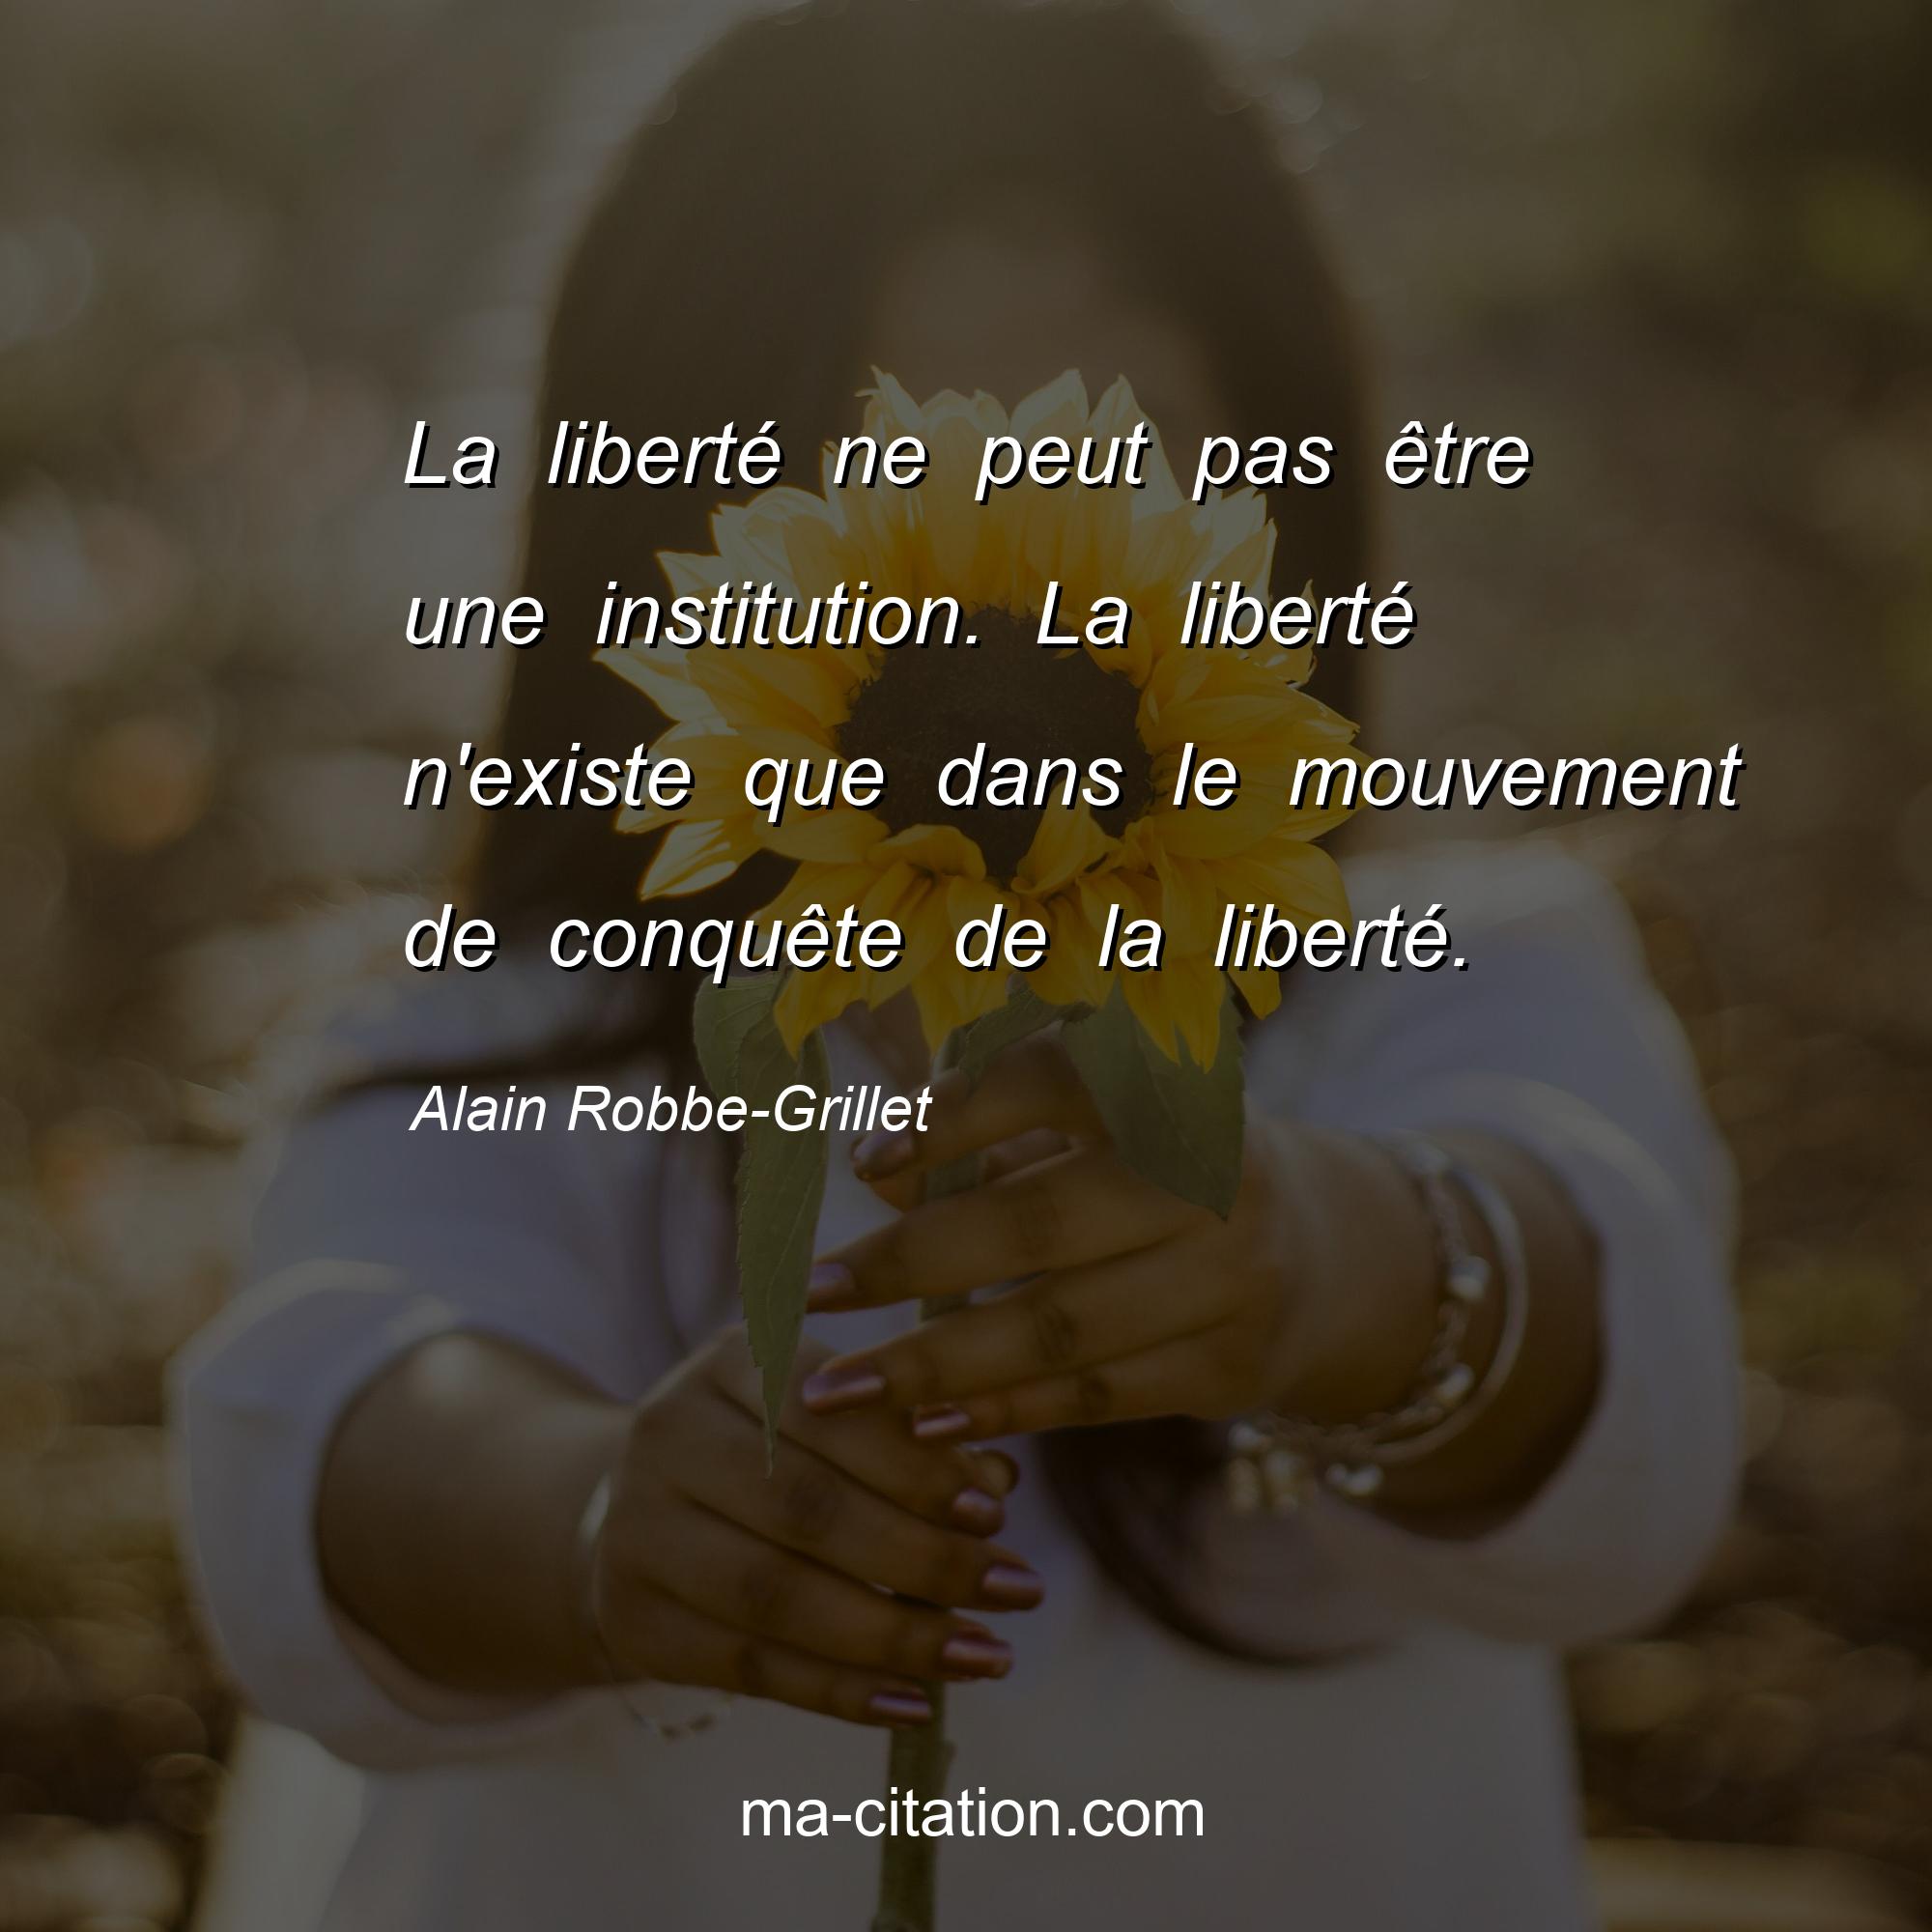 Alain Robbe-Grillet : La liberté ne peut pas être une institution. La liberté n'existe que dans le mouvement de conquête de la liberté.